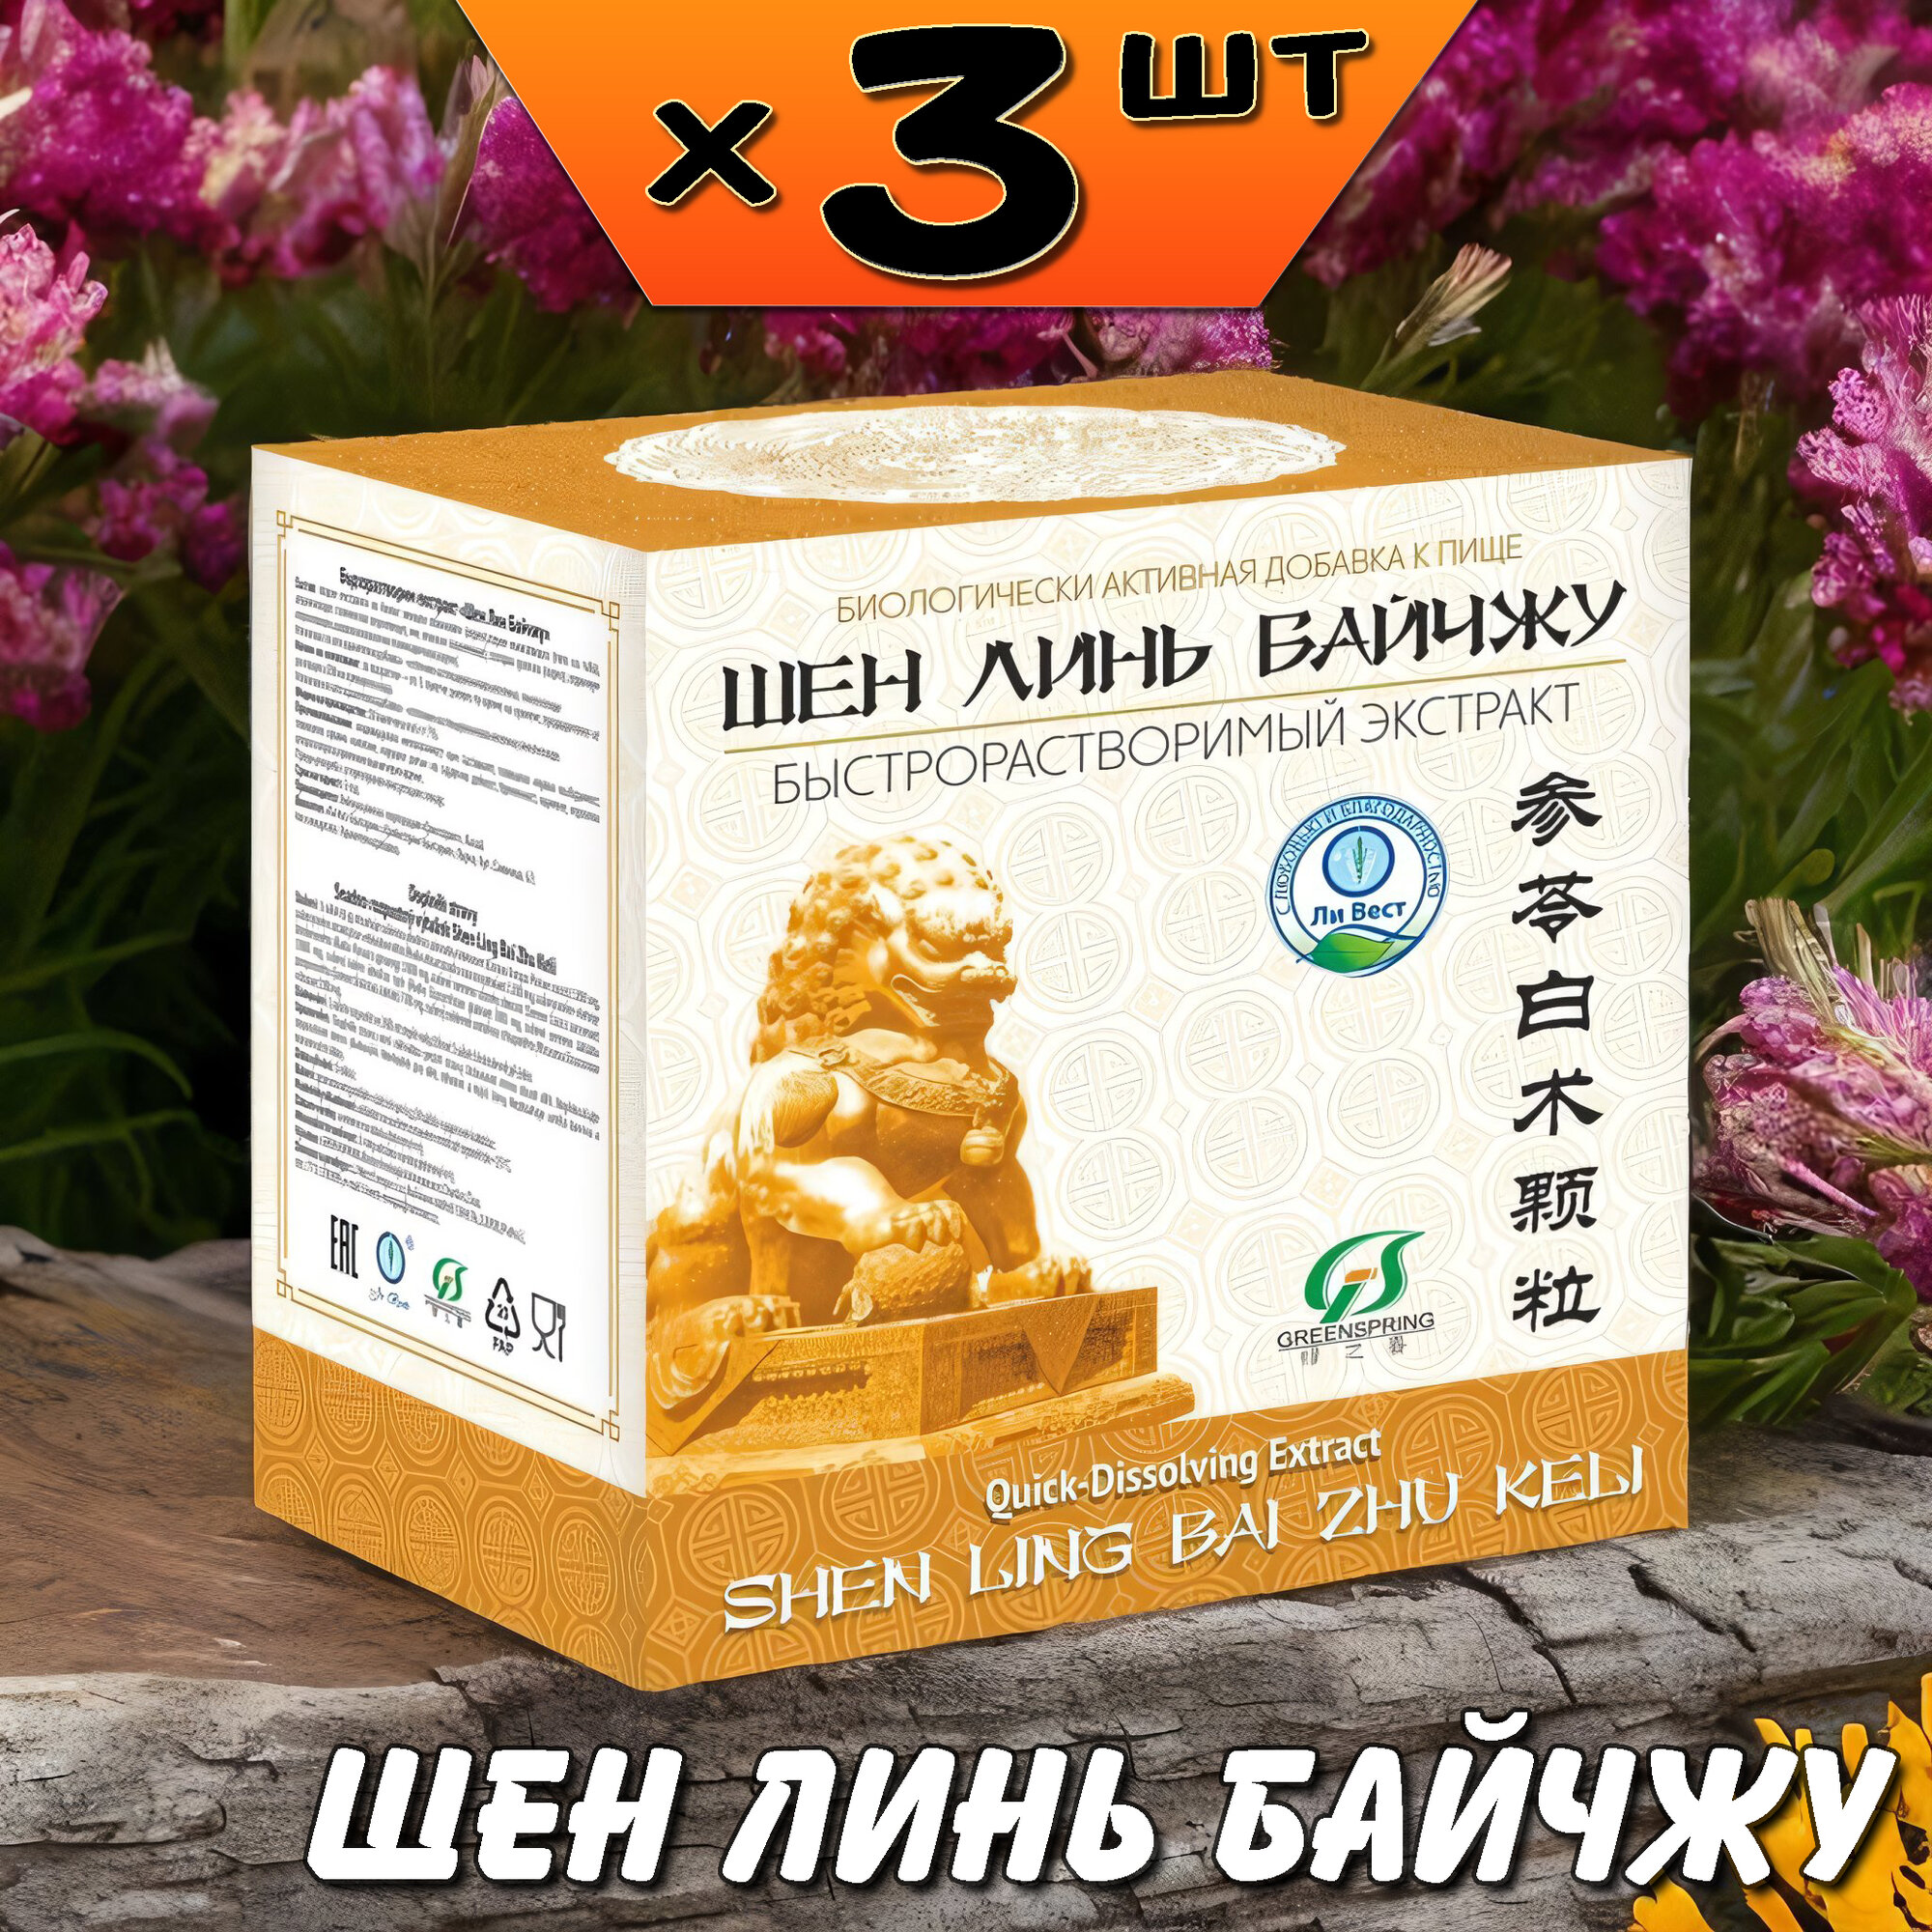 Шен Линь Байчжу экстракт для улучшения пищеварения, желудка, от усталости, 3 упаковки, Ли Вест